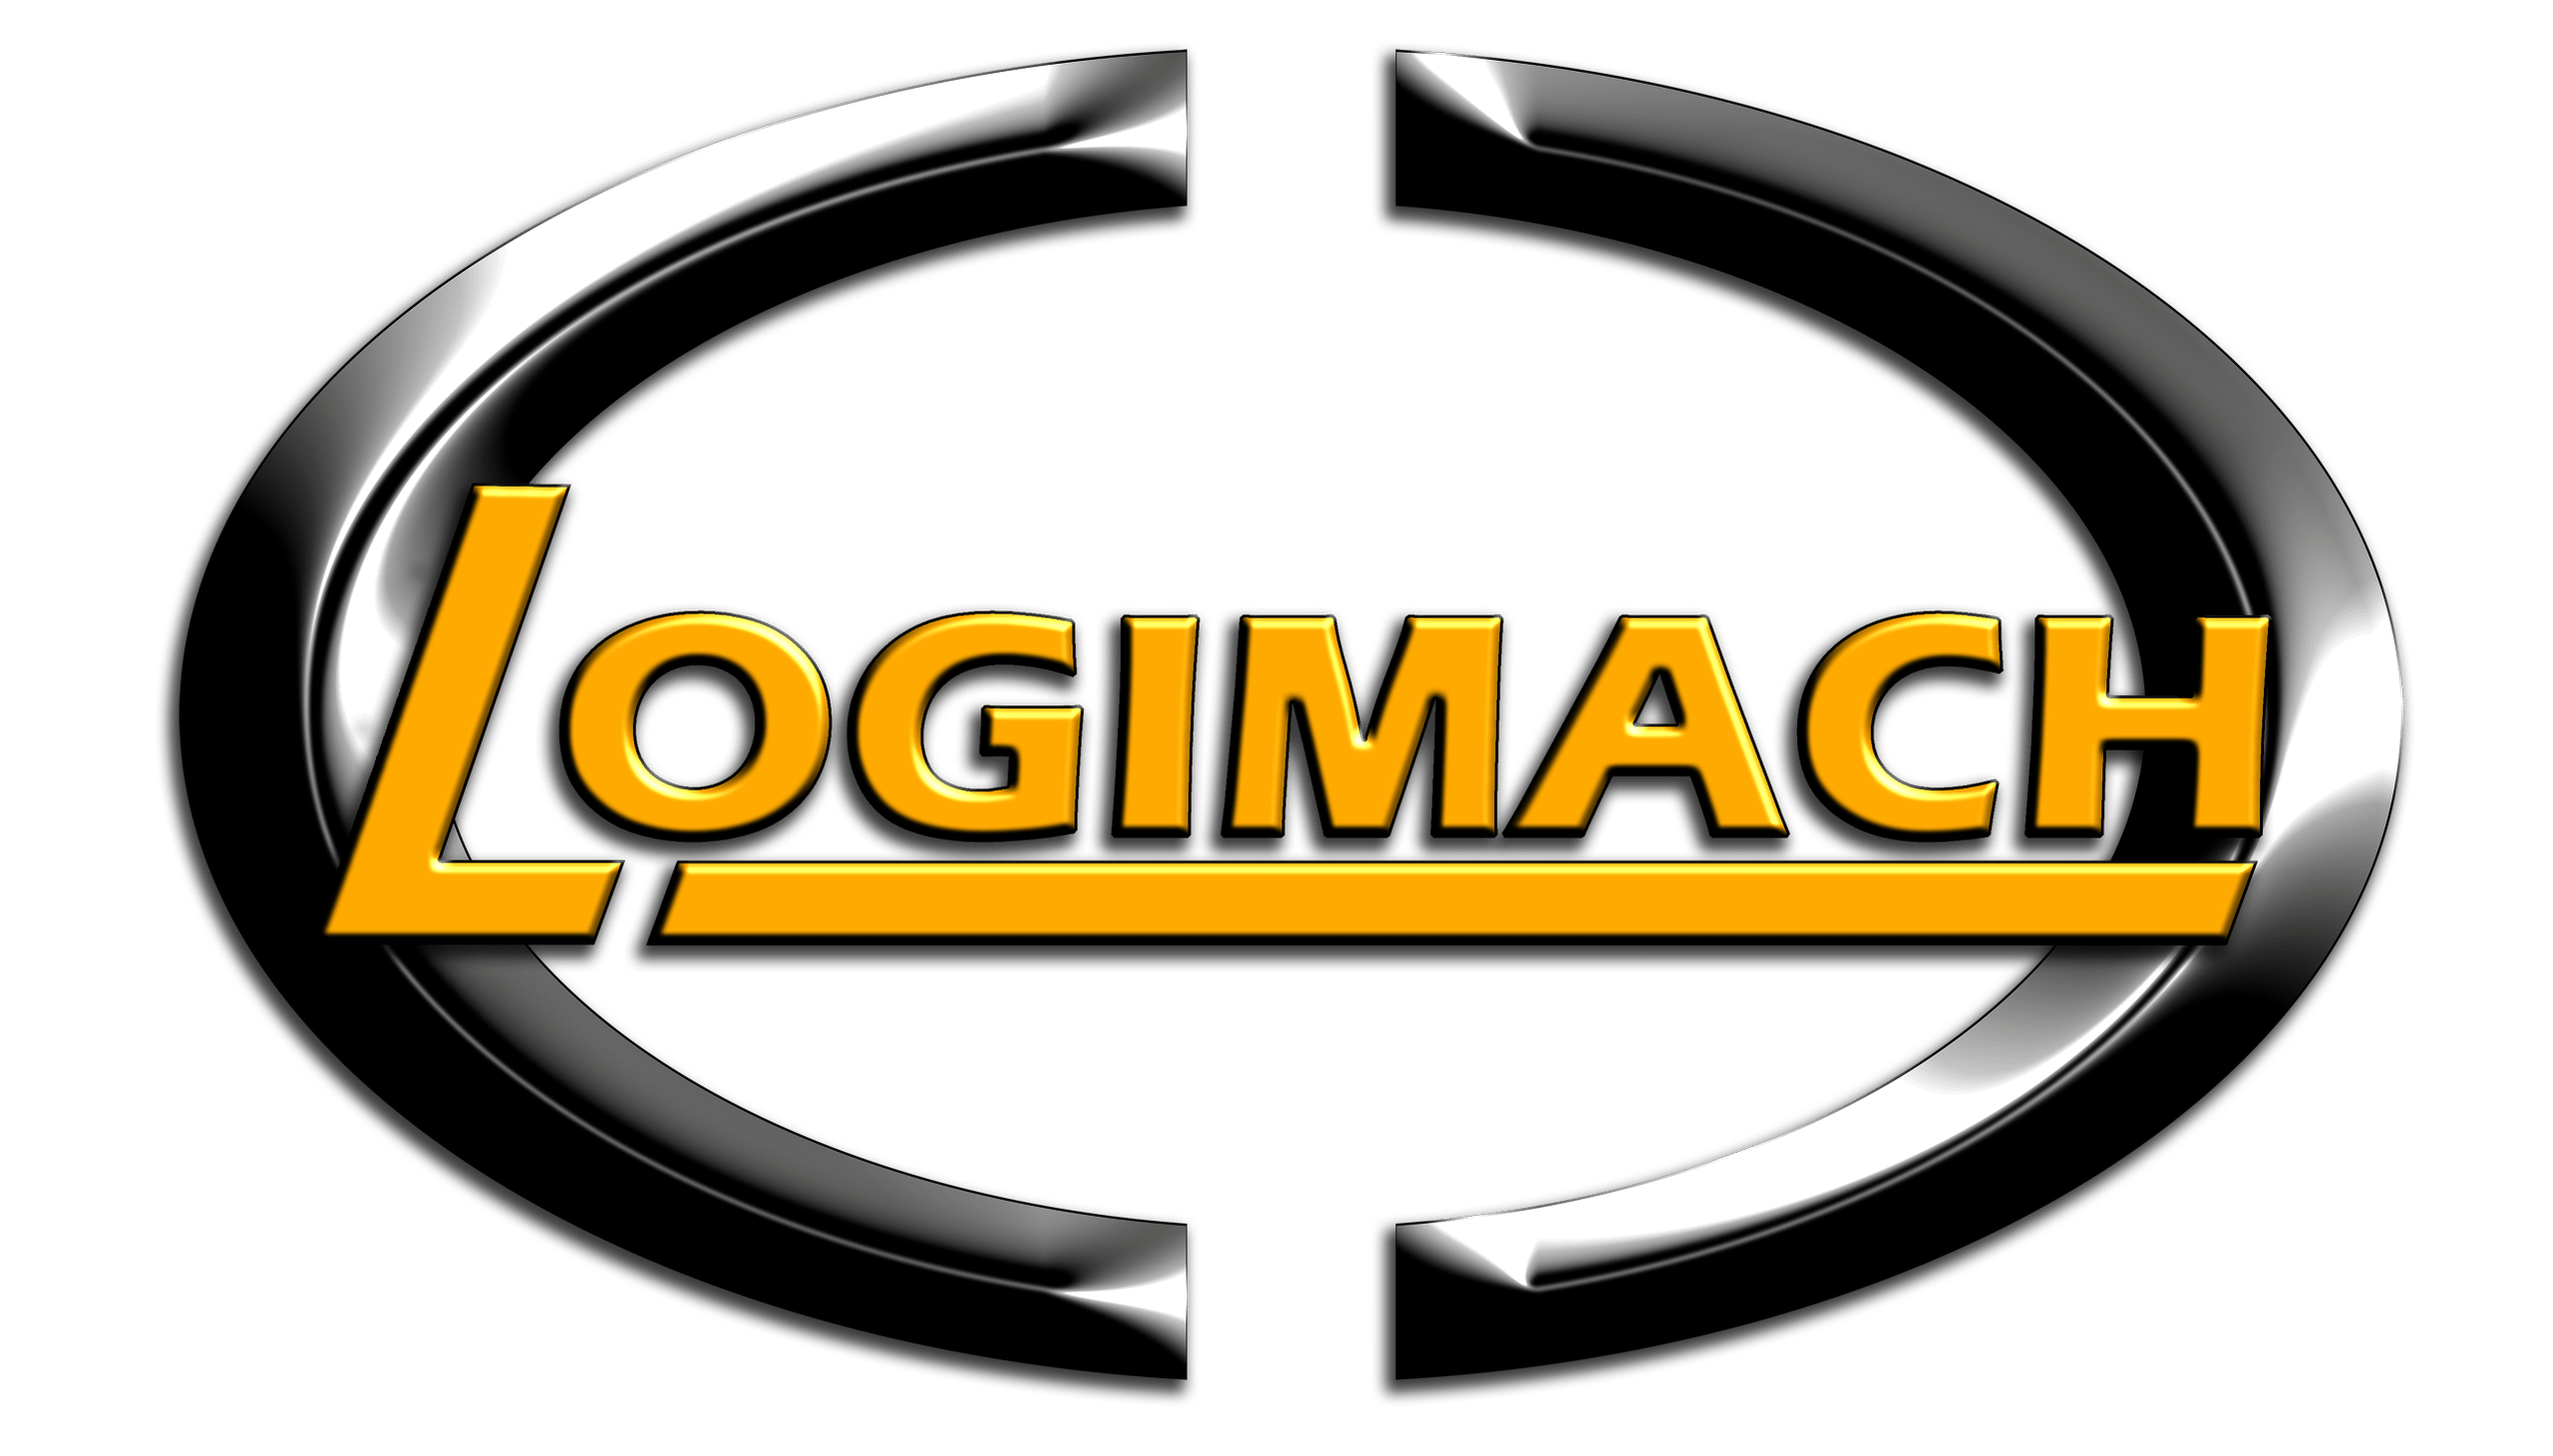 logimach